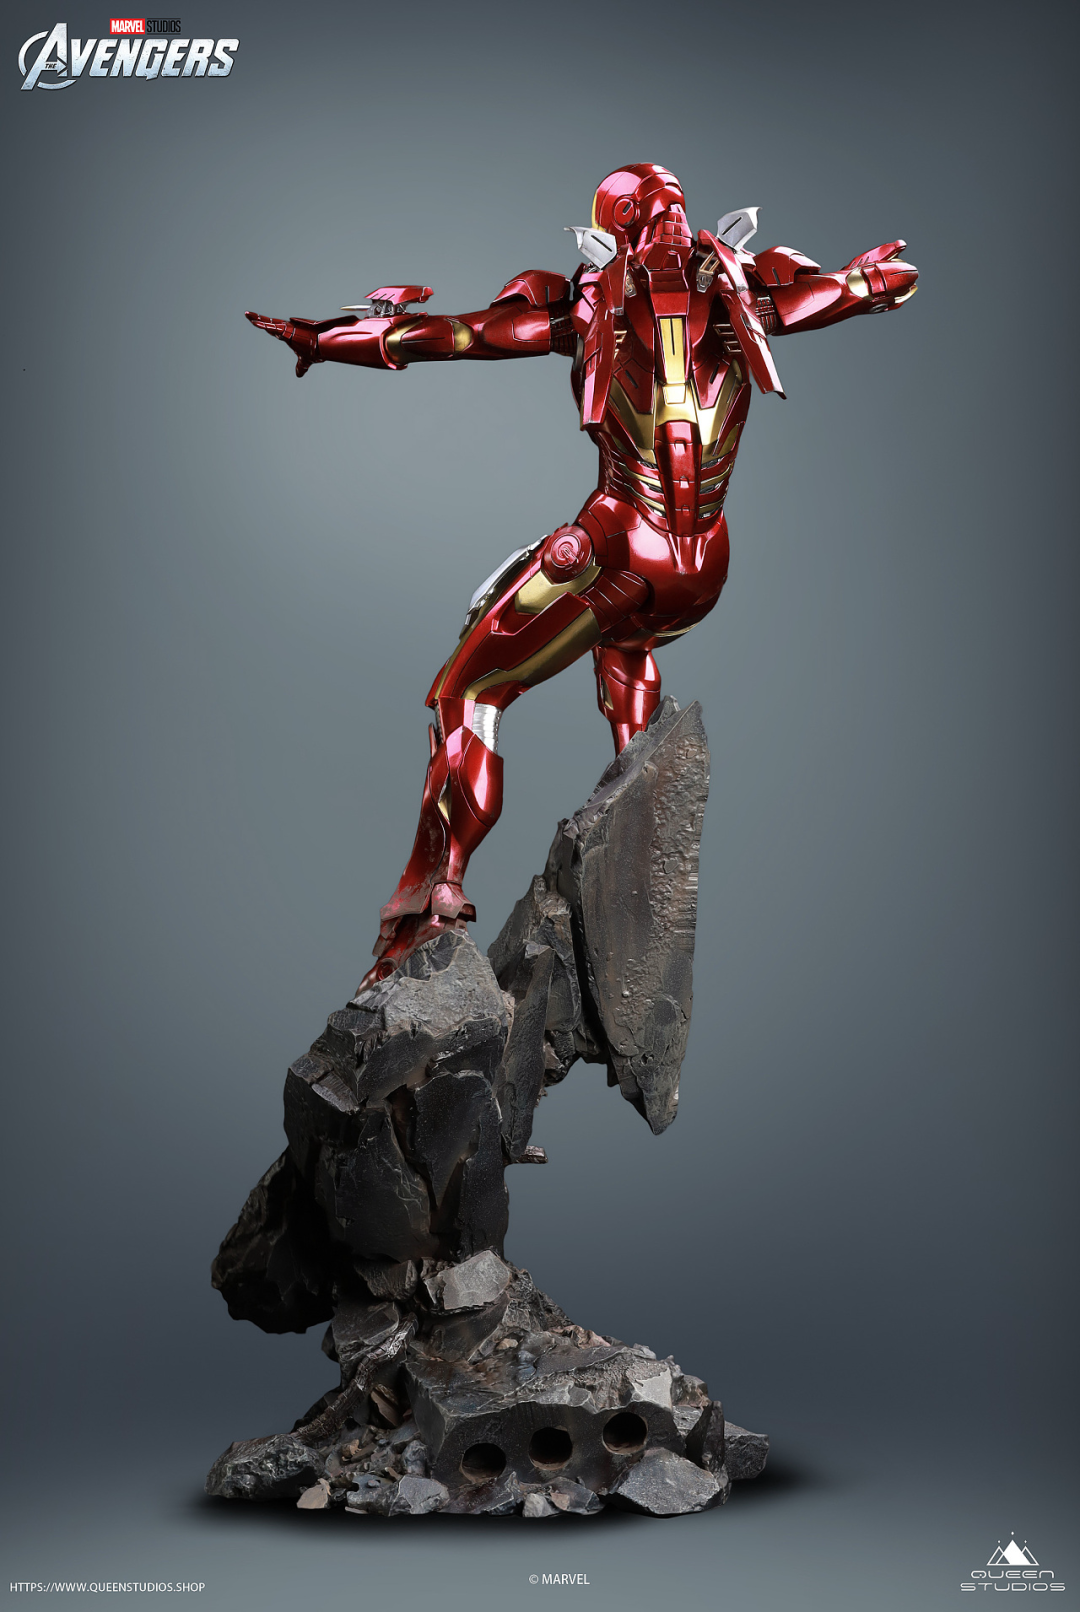 这款钢铁侠MK7雕像简直帅爆了